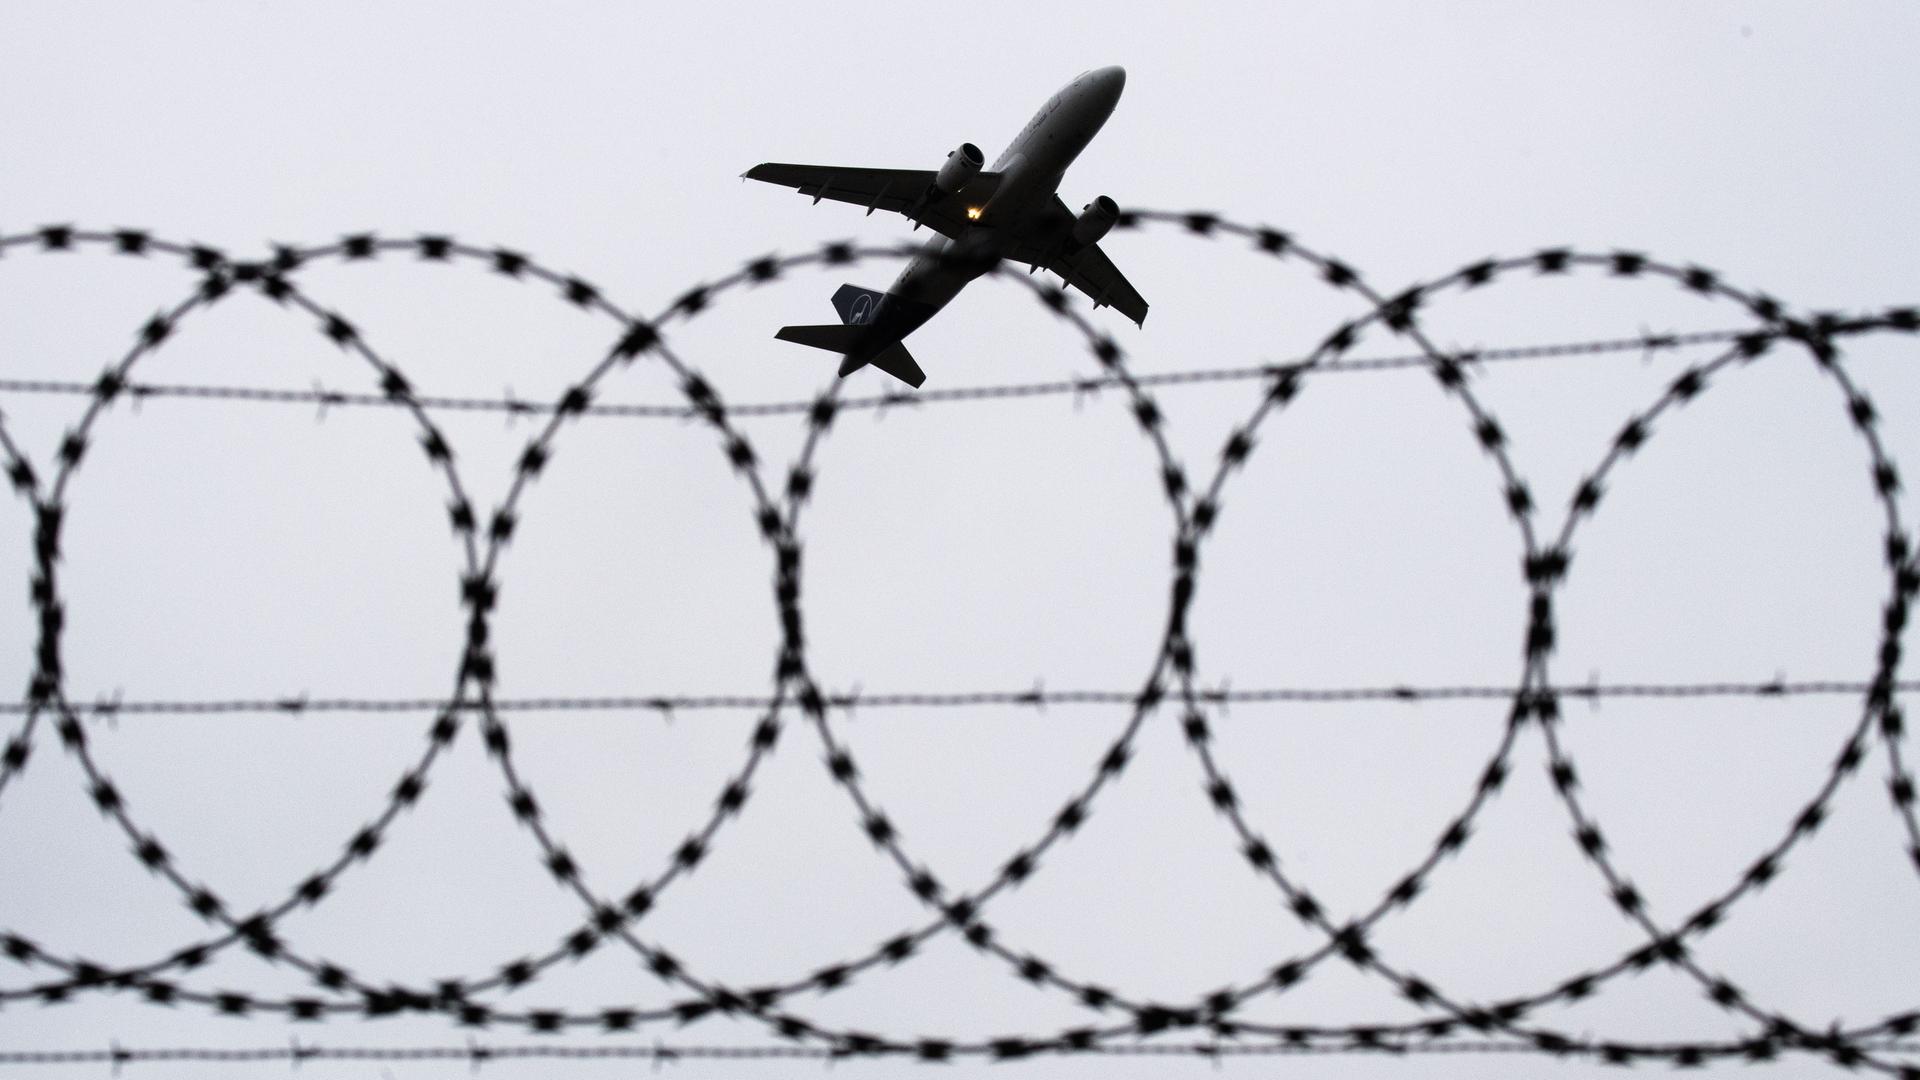 Ein Flugzeug startet, fotografiert durch Stacheldraht am Flughafenzaun.